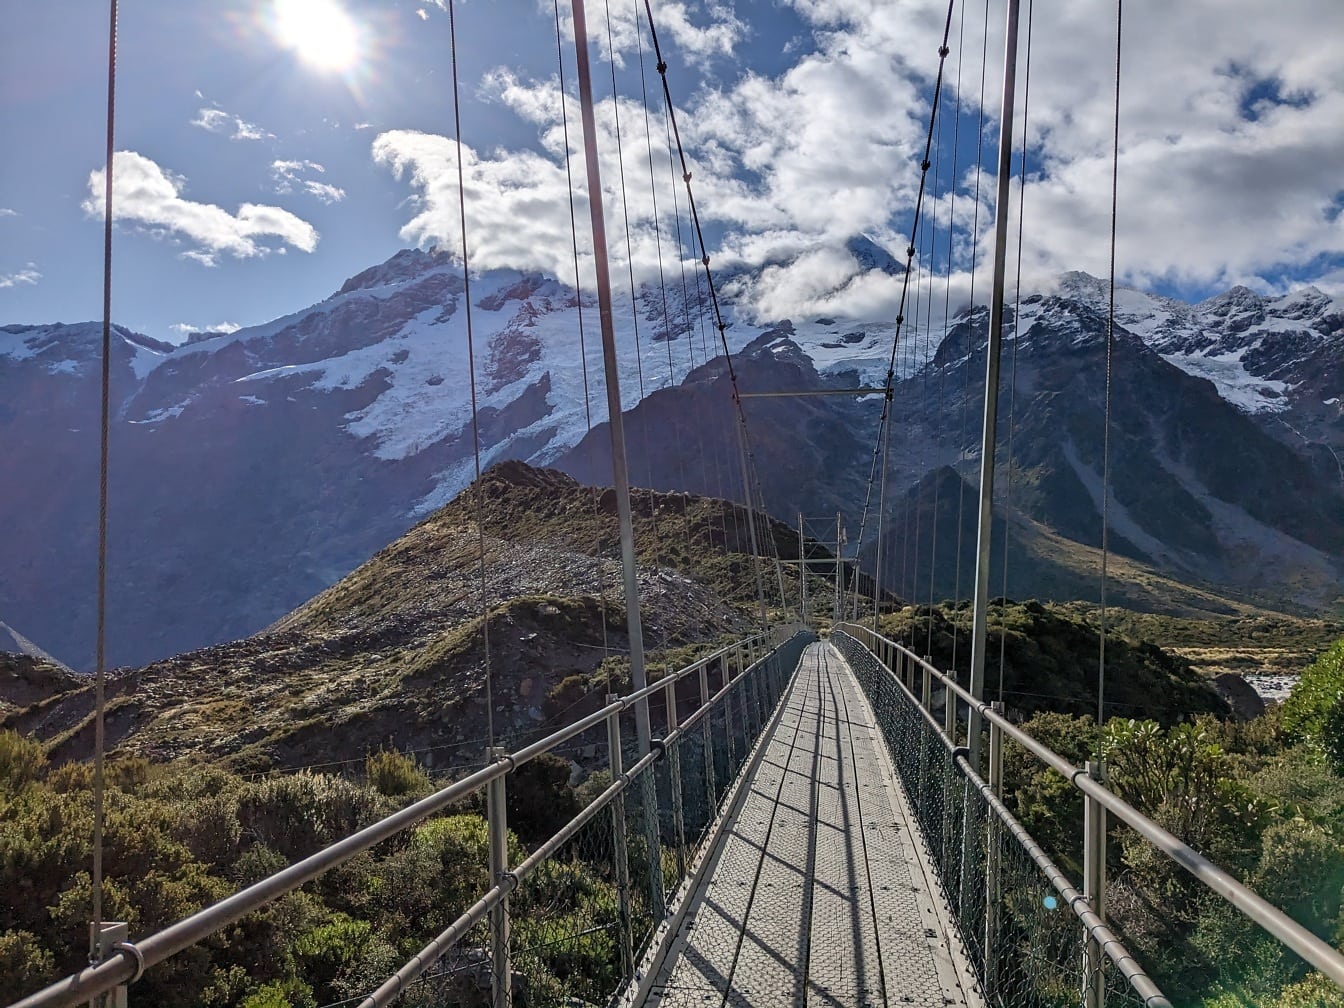 Ponte suspensa para pedestres no monte Cook, parque nacional, Nova Zelândia